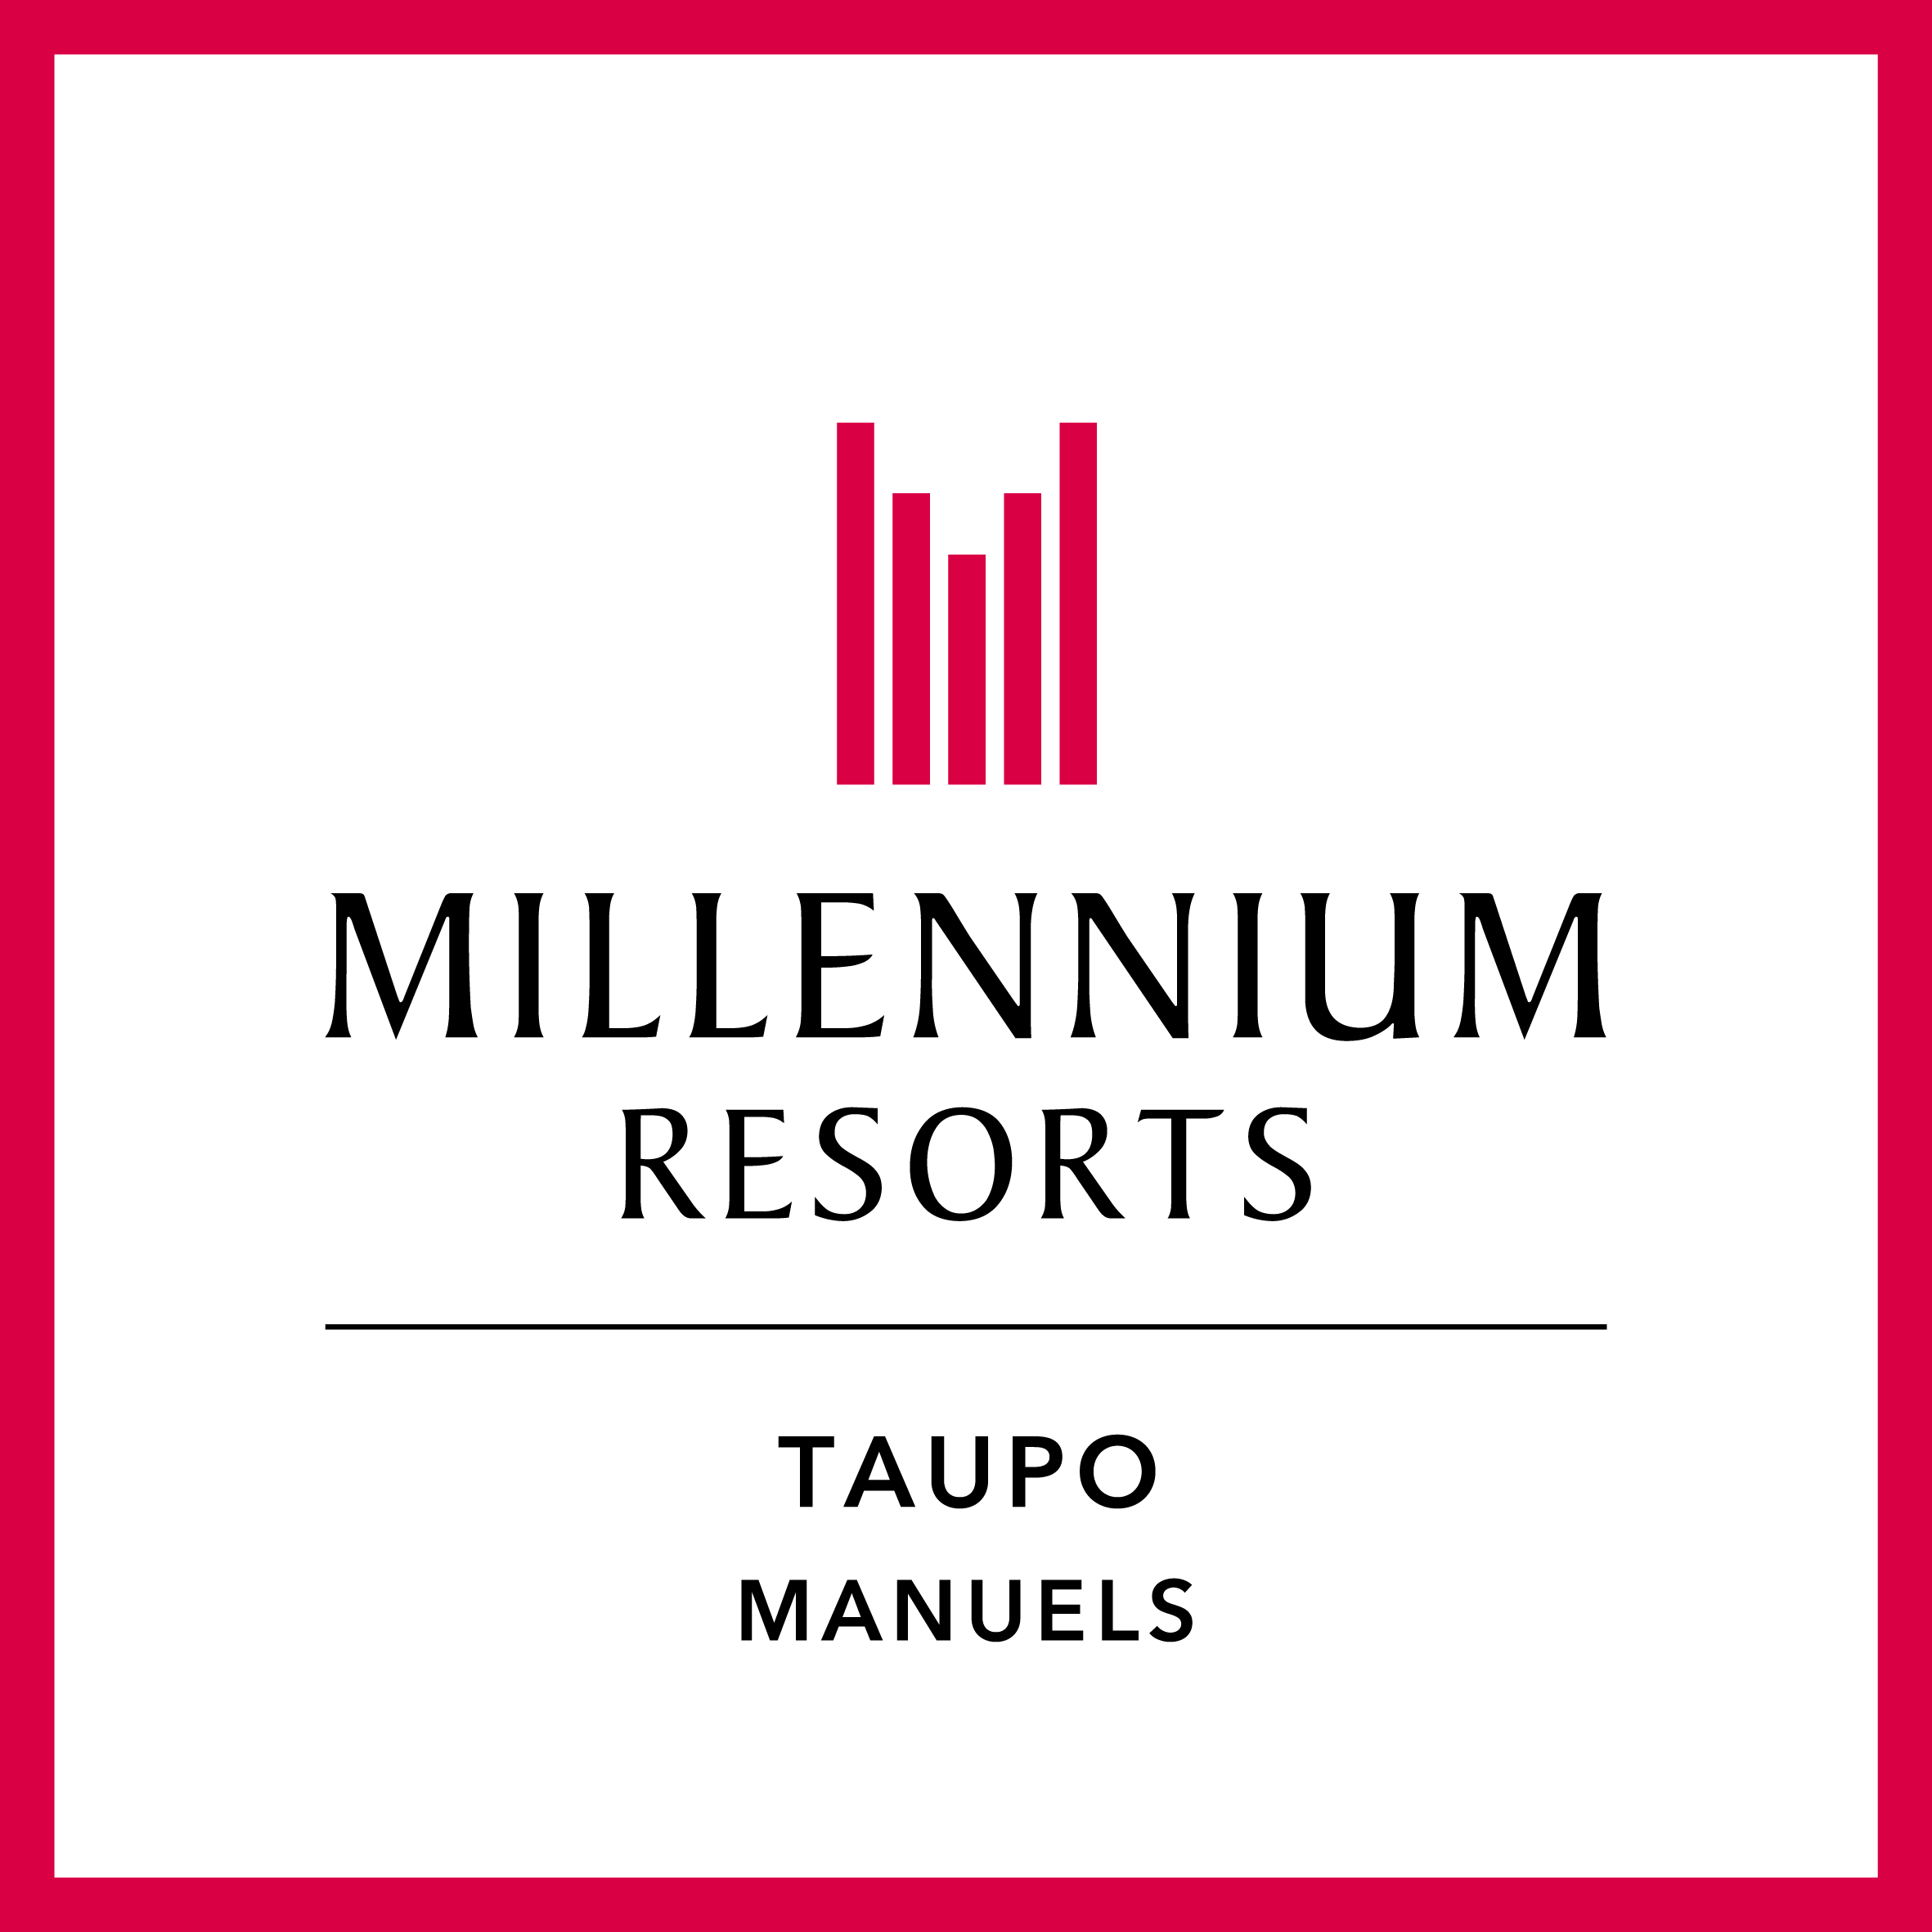 
Millennium Hotel & Resort Manuels Taupo